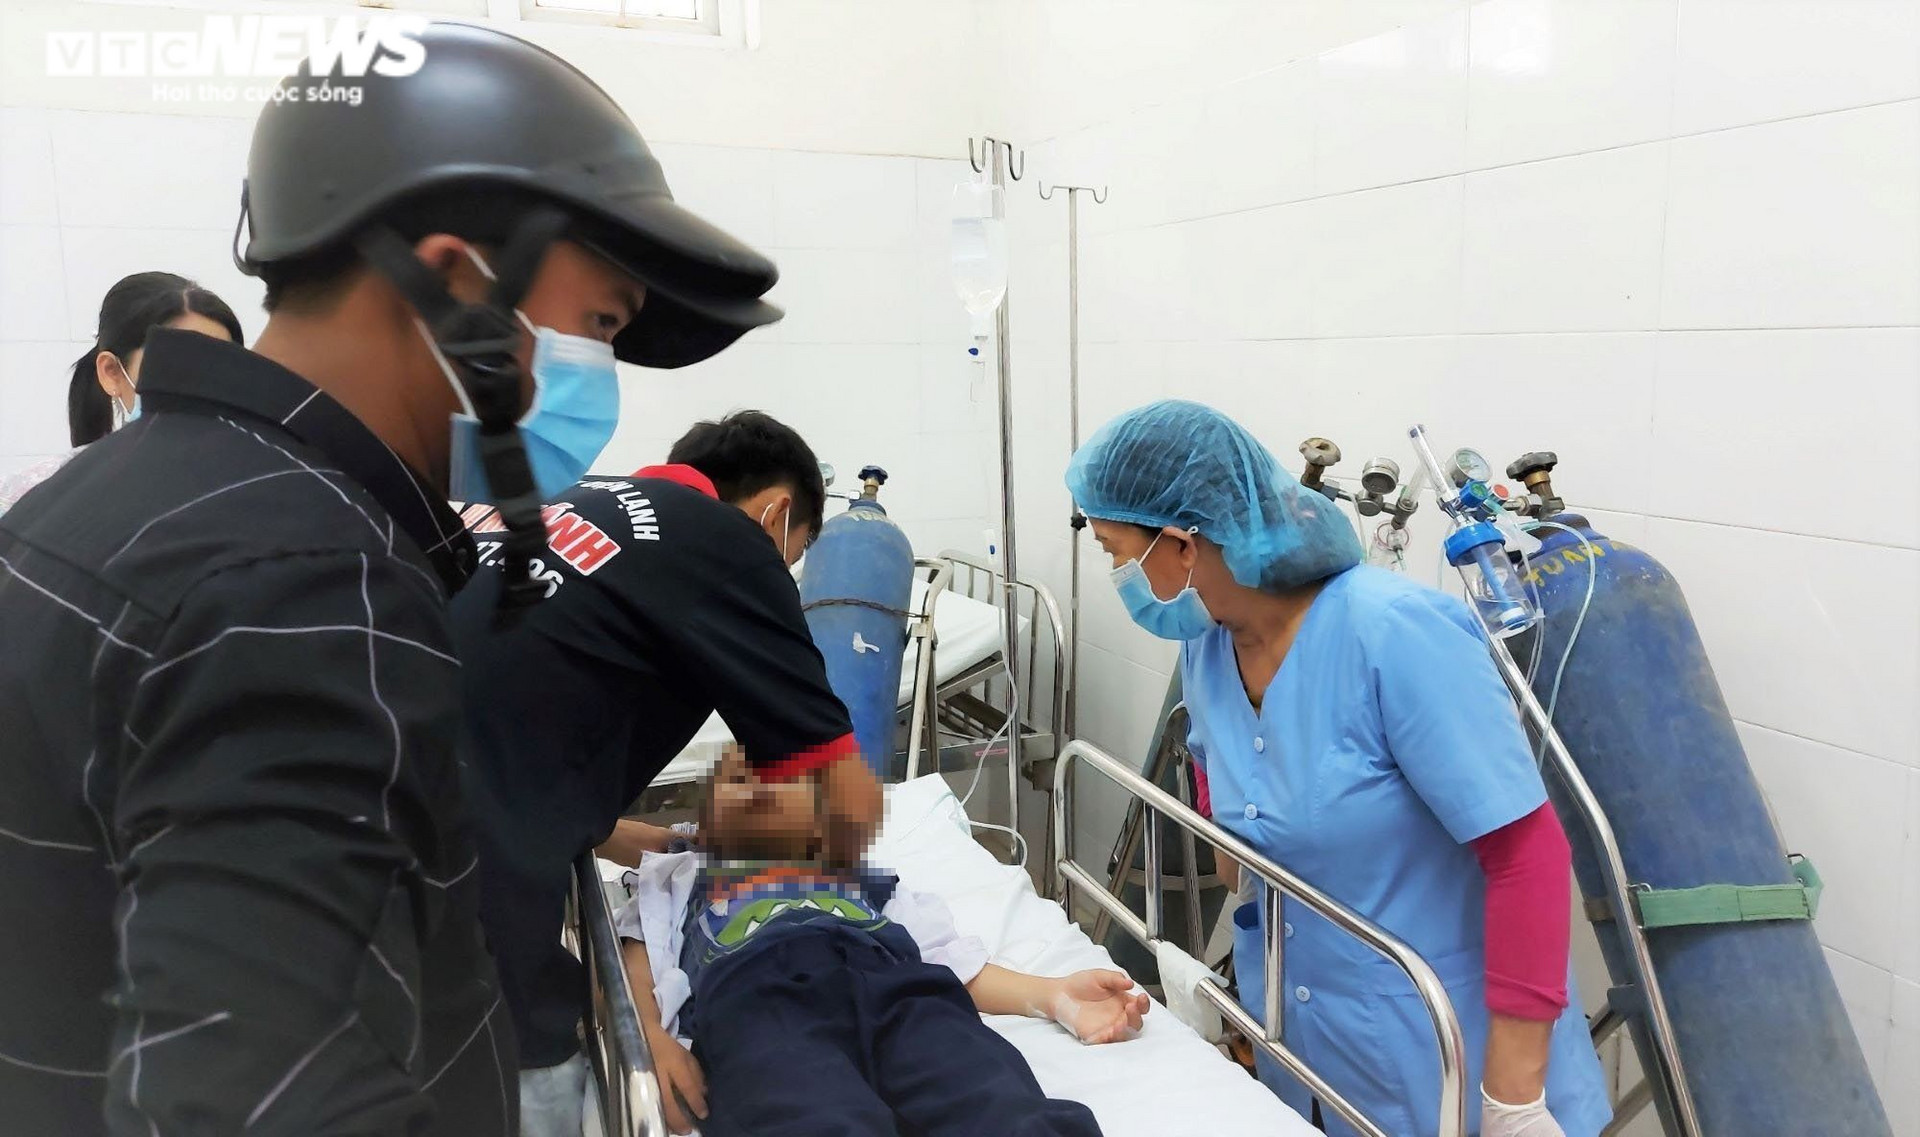 Chơi đồ chơi lạ, hơn 30 học sinh tiểu học Đà Nẵng nhập viện cấp cứu - 1